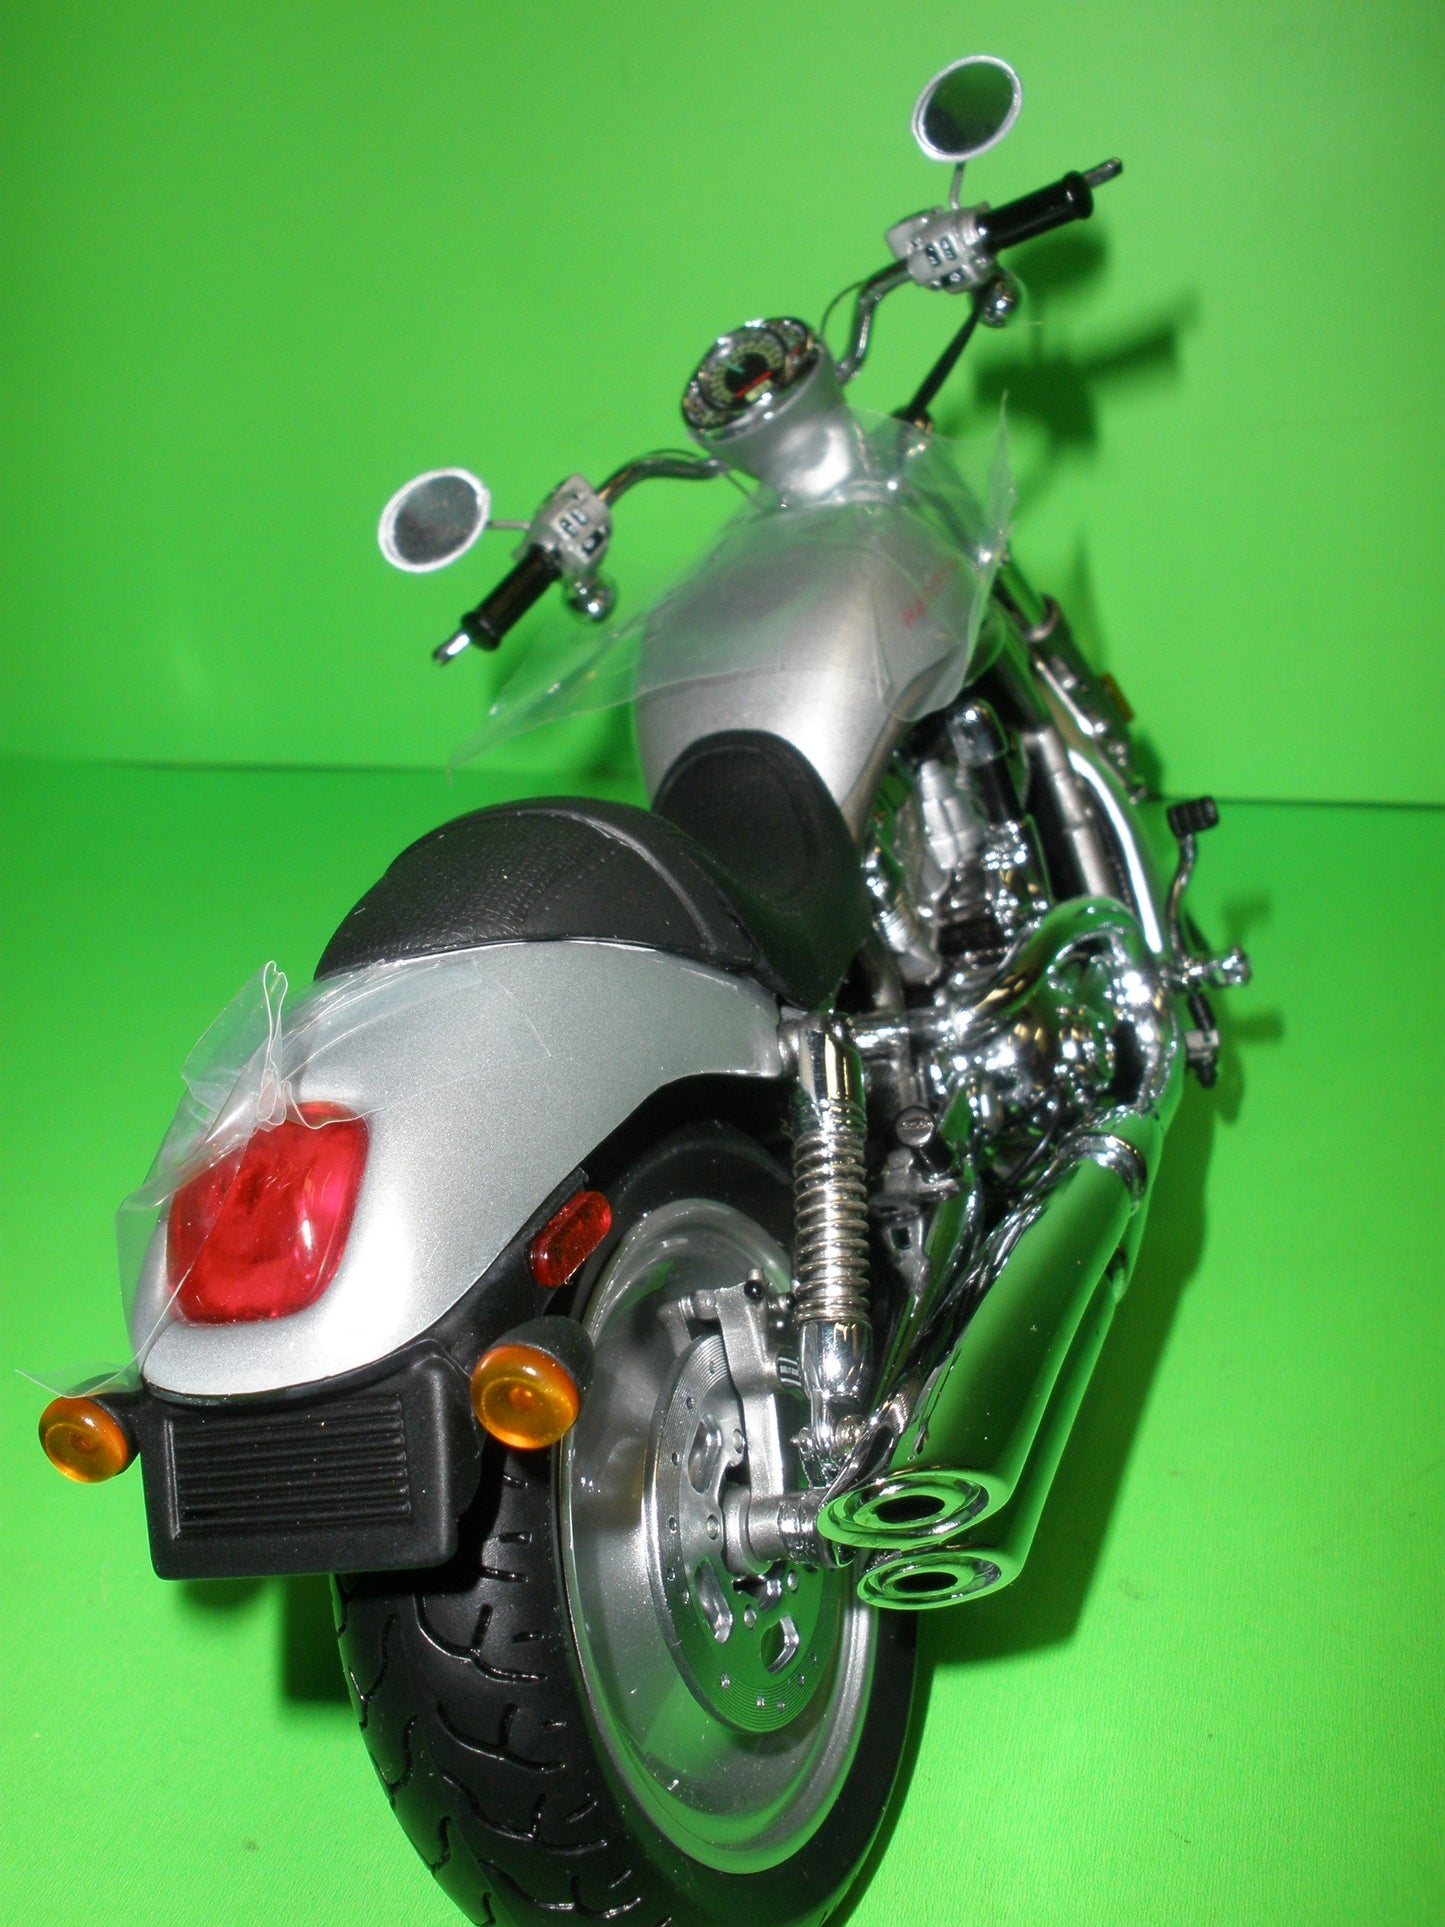 Harley Davidson V-Rod Motorcycle - B11B990